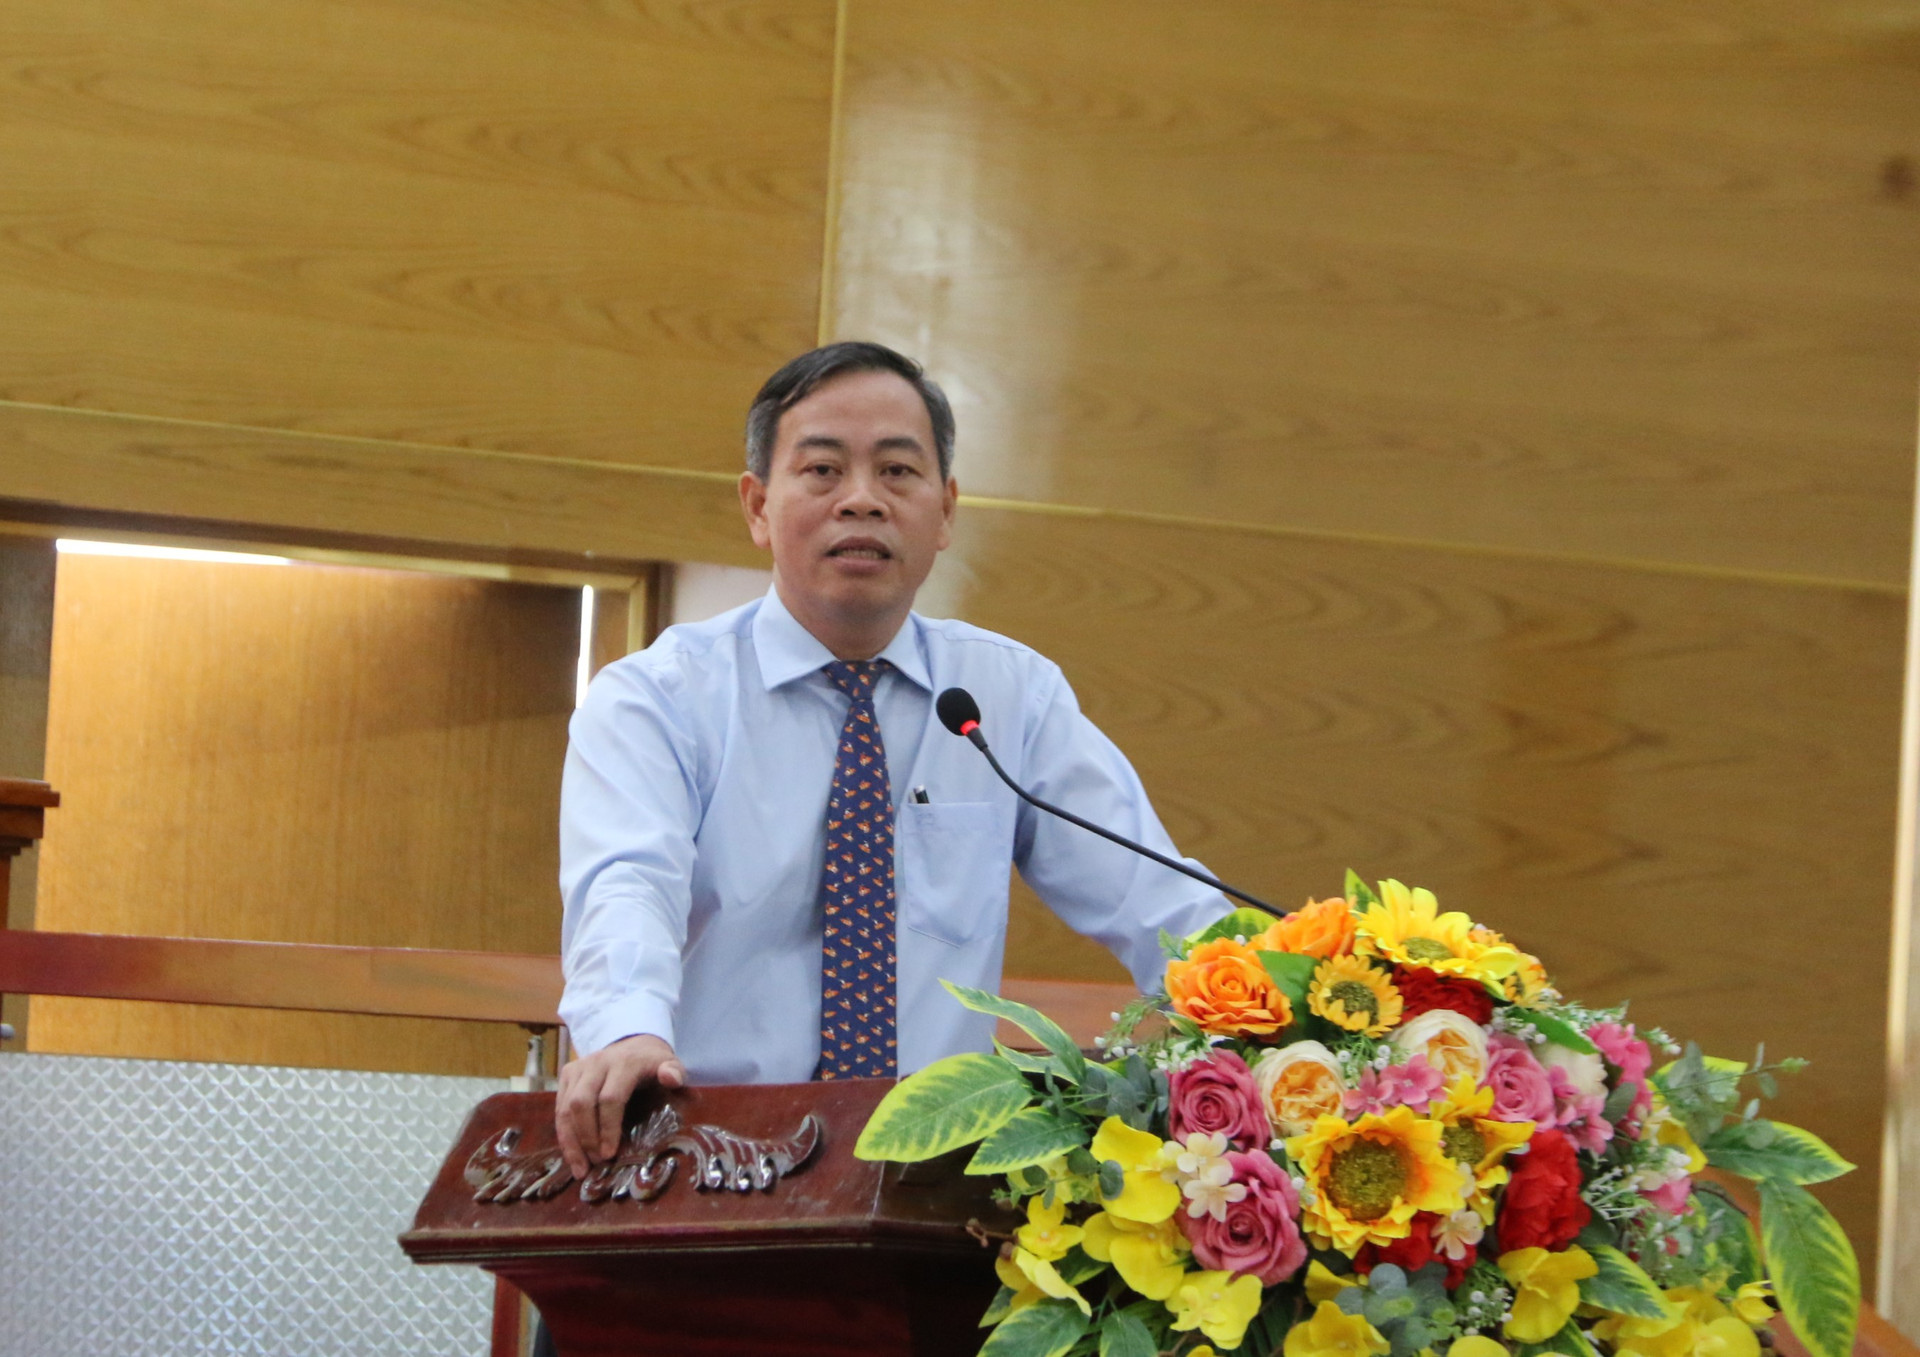 Qua các chức sắc, chức việc, ông Nguyễn Đăng Quang gửi lời thăm hỏi ân cần đến các tín đồ, phật tử của các tổ chức tôn giáo.